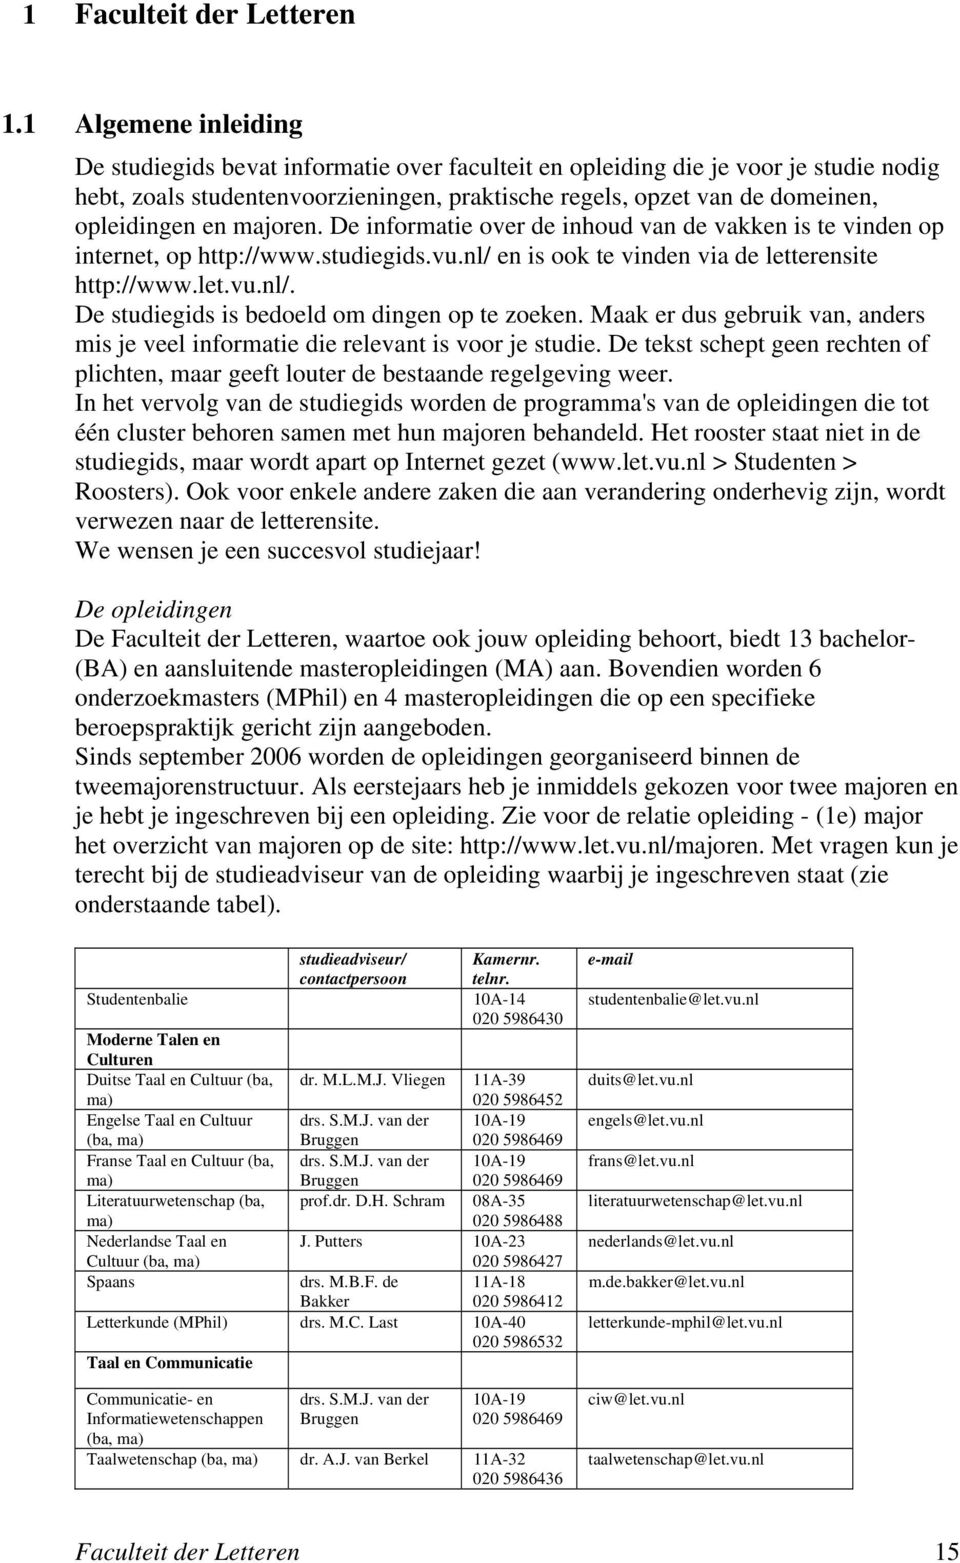 en majoren. De informatie over de inhoud van de vakken is te vinden op internet, op http://www.studiegids.vu.nl/ en is ook te vinden via de letterensite http://www.let.vu.nl/. De studiegids is bedoeld om dingen op te zoeken.